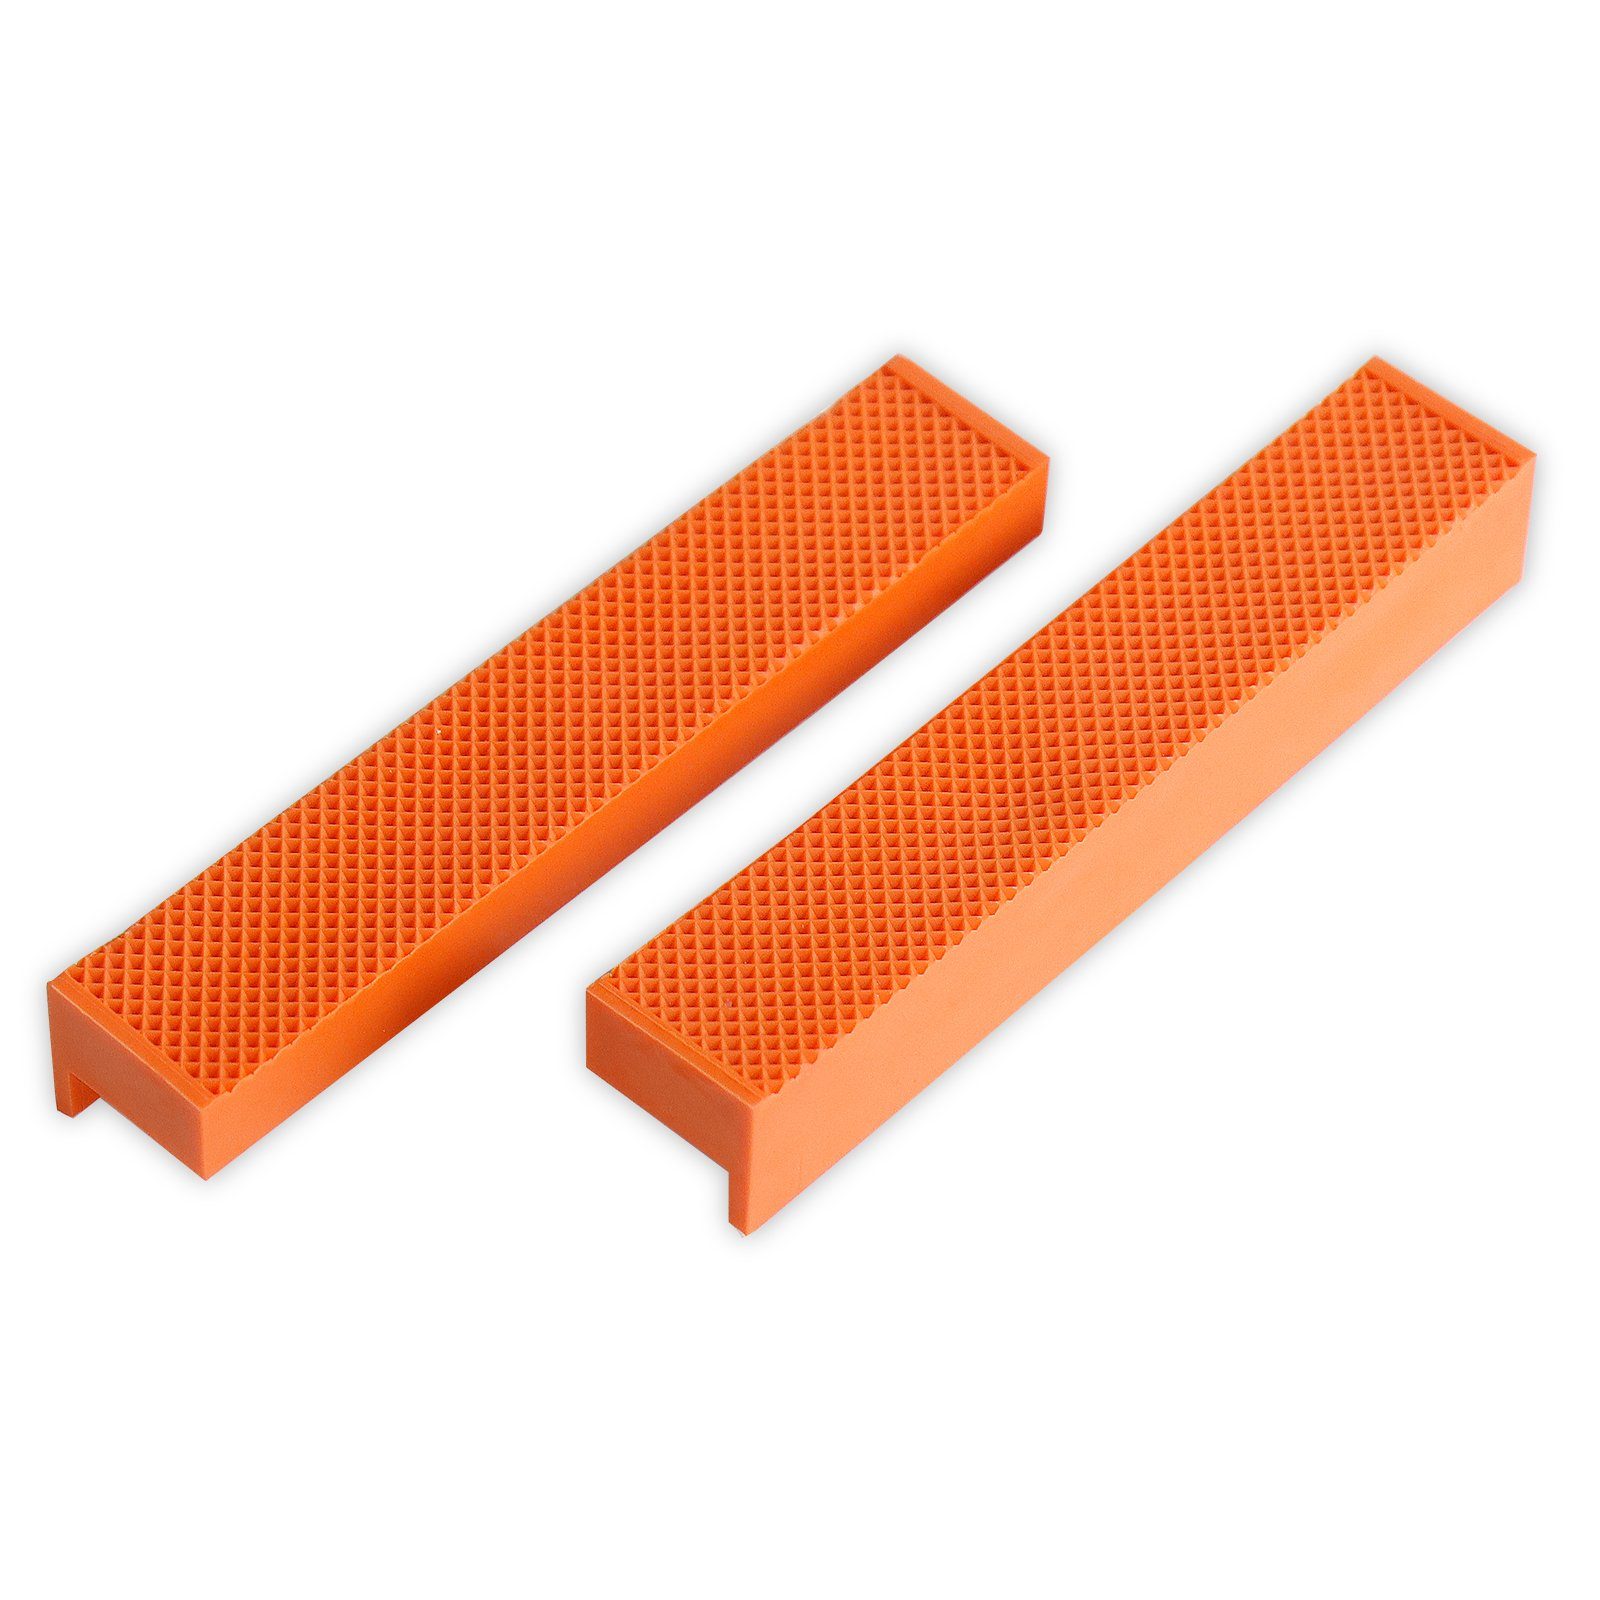 Schraubstock CCLIFE tlg Magnet Schraubstock-Schutzbacken mit 2 Breite orange 150mm 110mm /